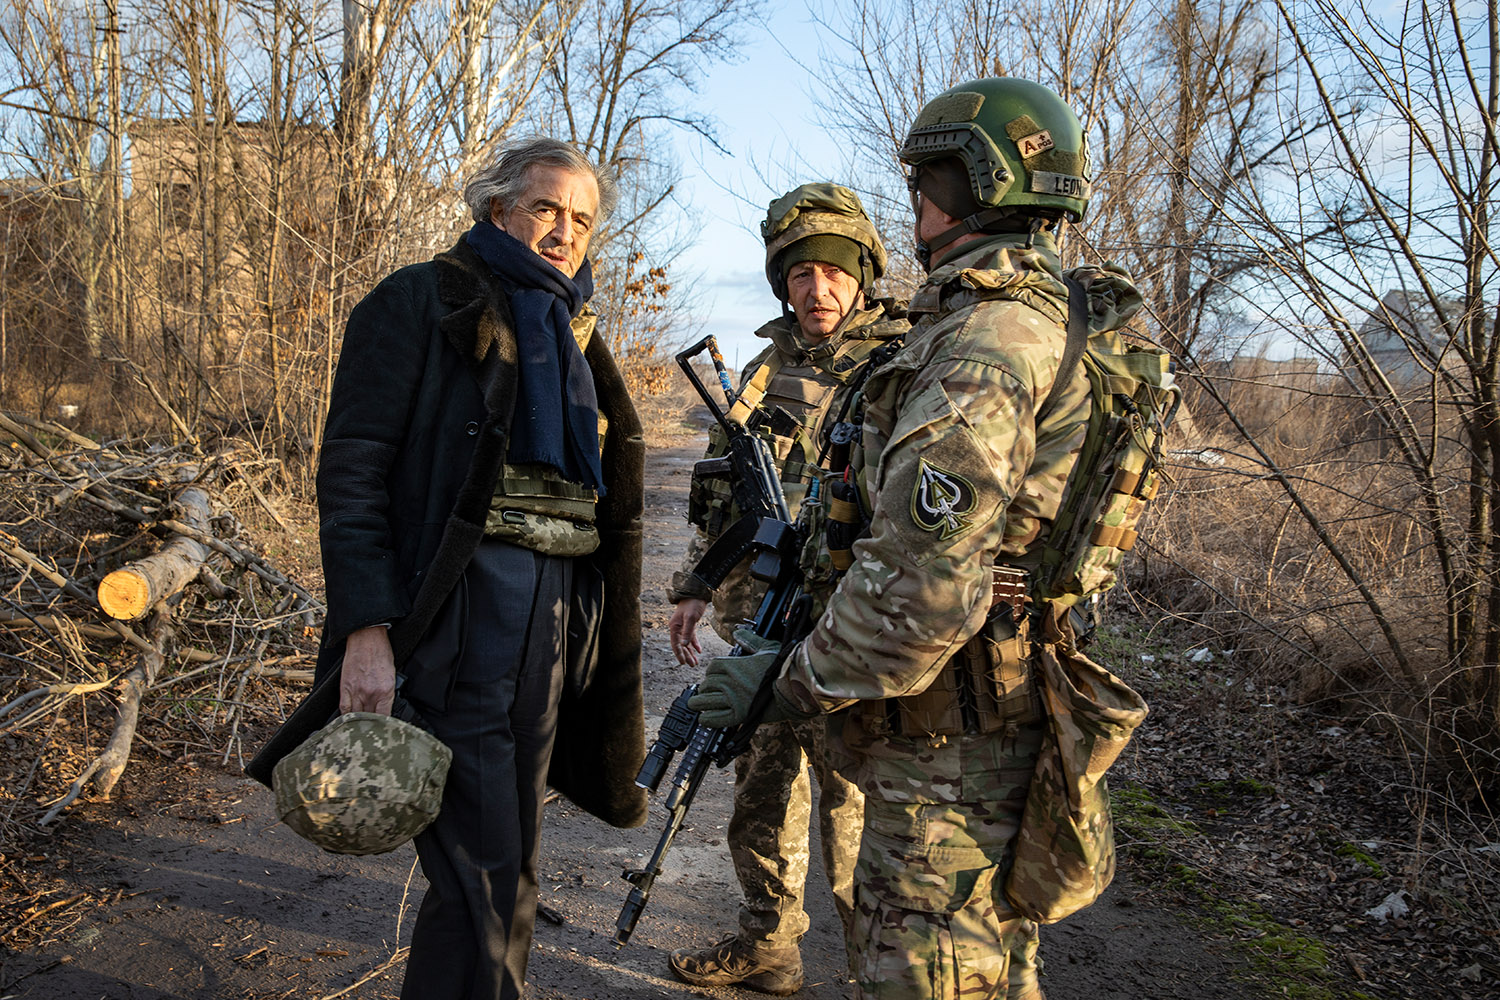 Bernard-Henri Lévy avec deux militaires en uniformes, en plein hiver. BHL porte son casque de soldat à la main.